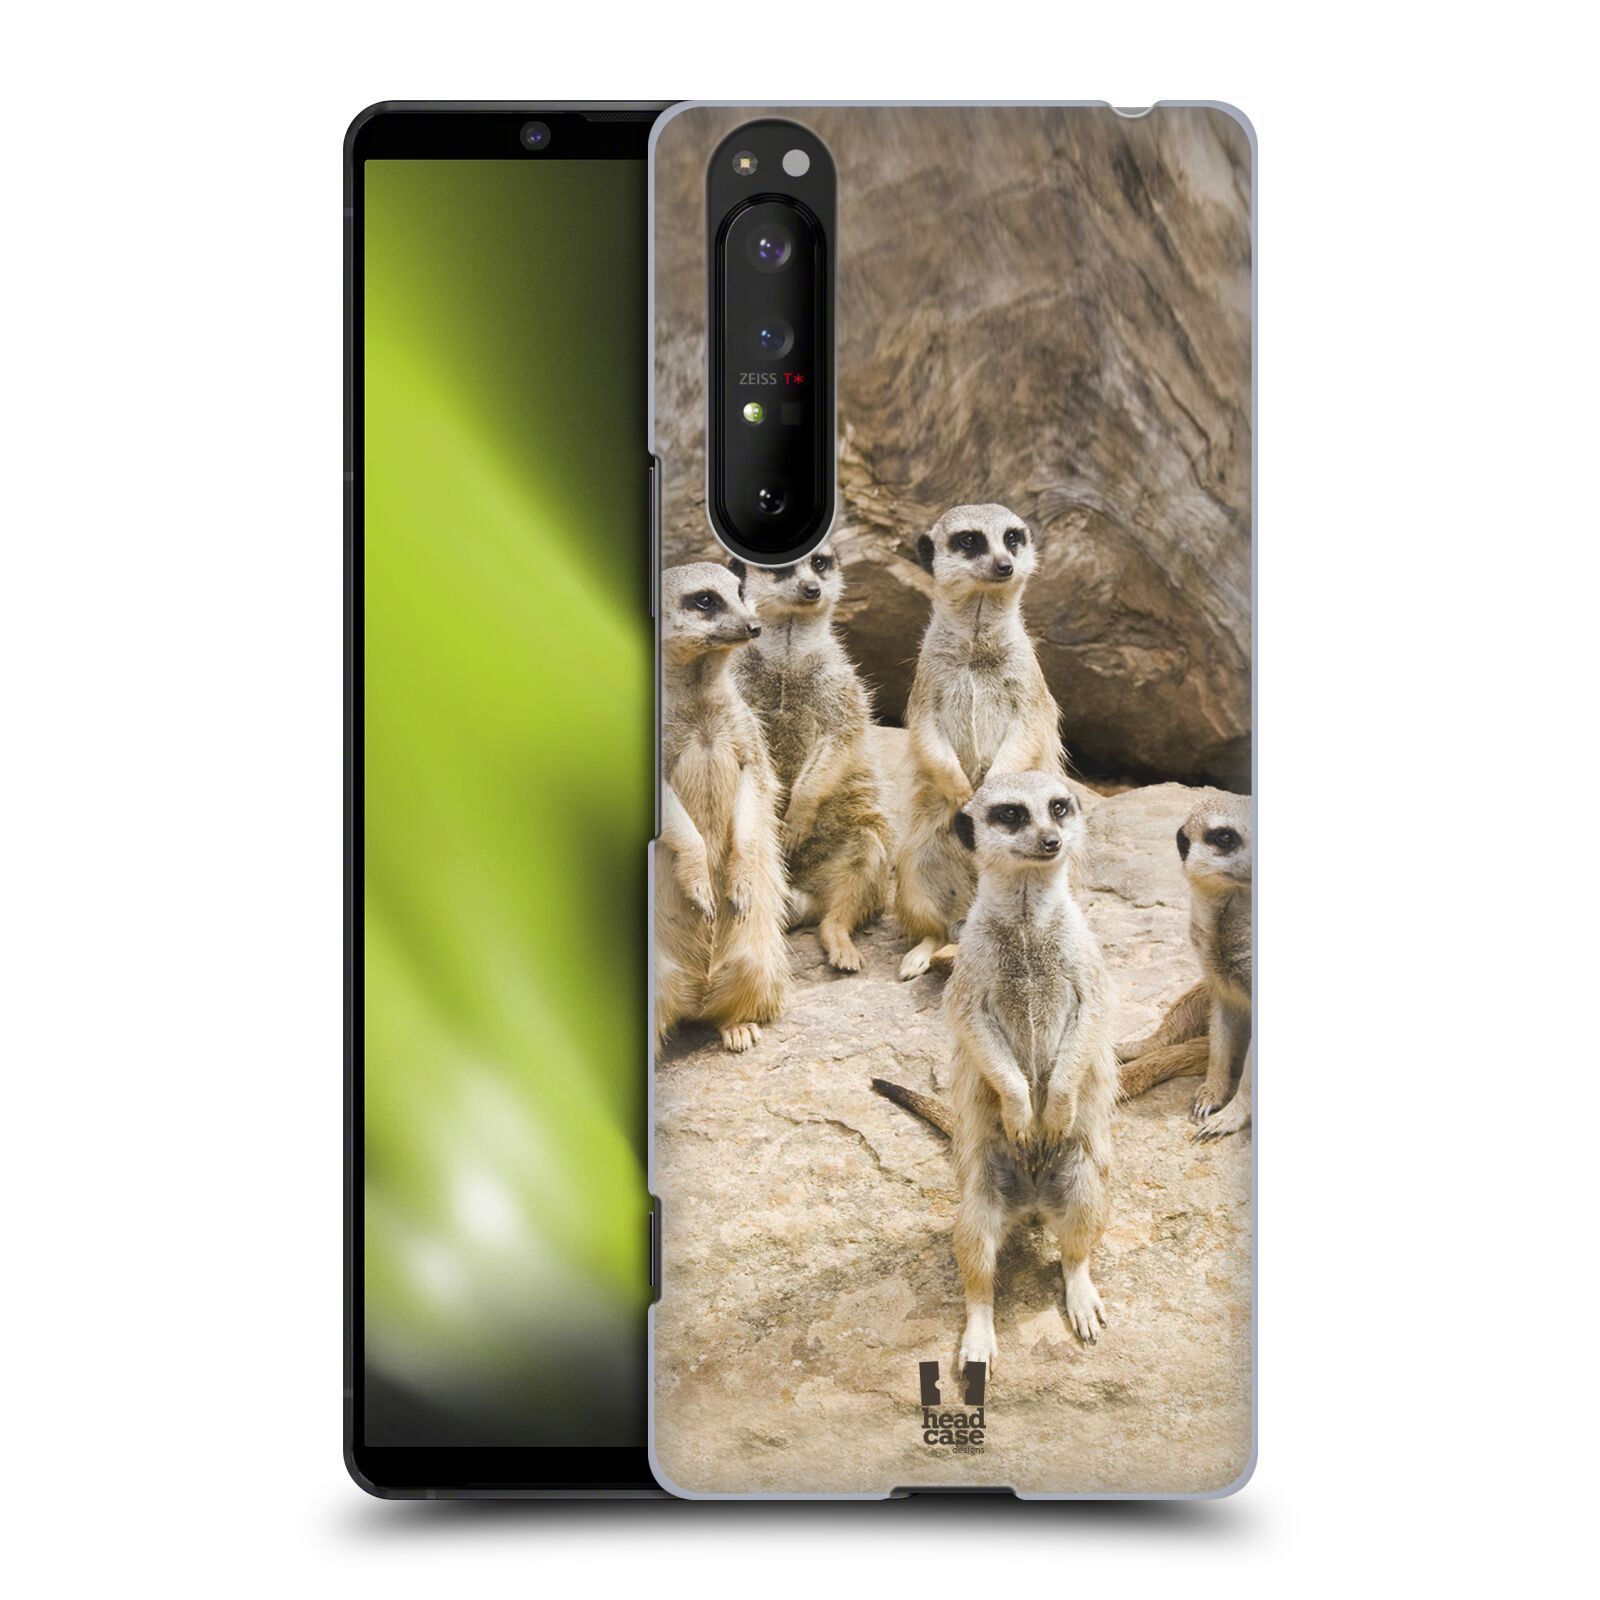 Zadní obal pro mobil Sony Xperia 1 II - HEAD CASE - Svět zvířat roztomilé surikaty